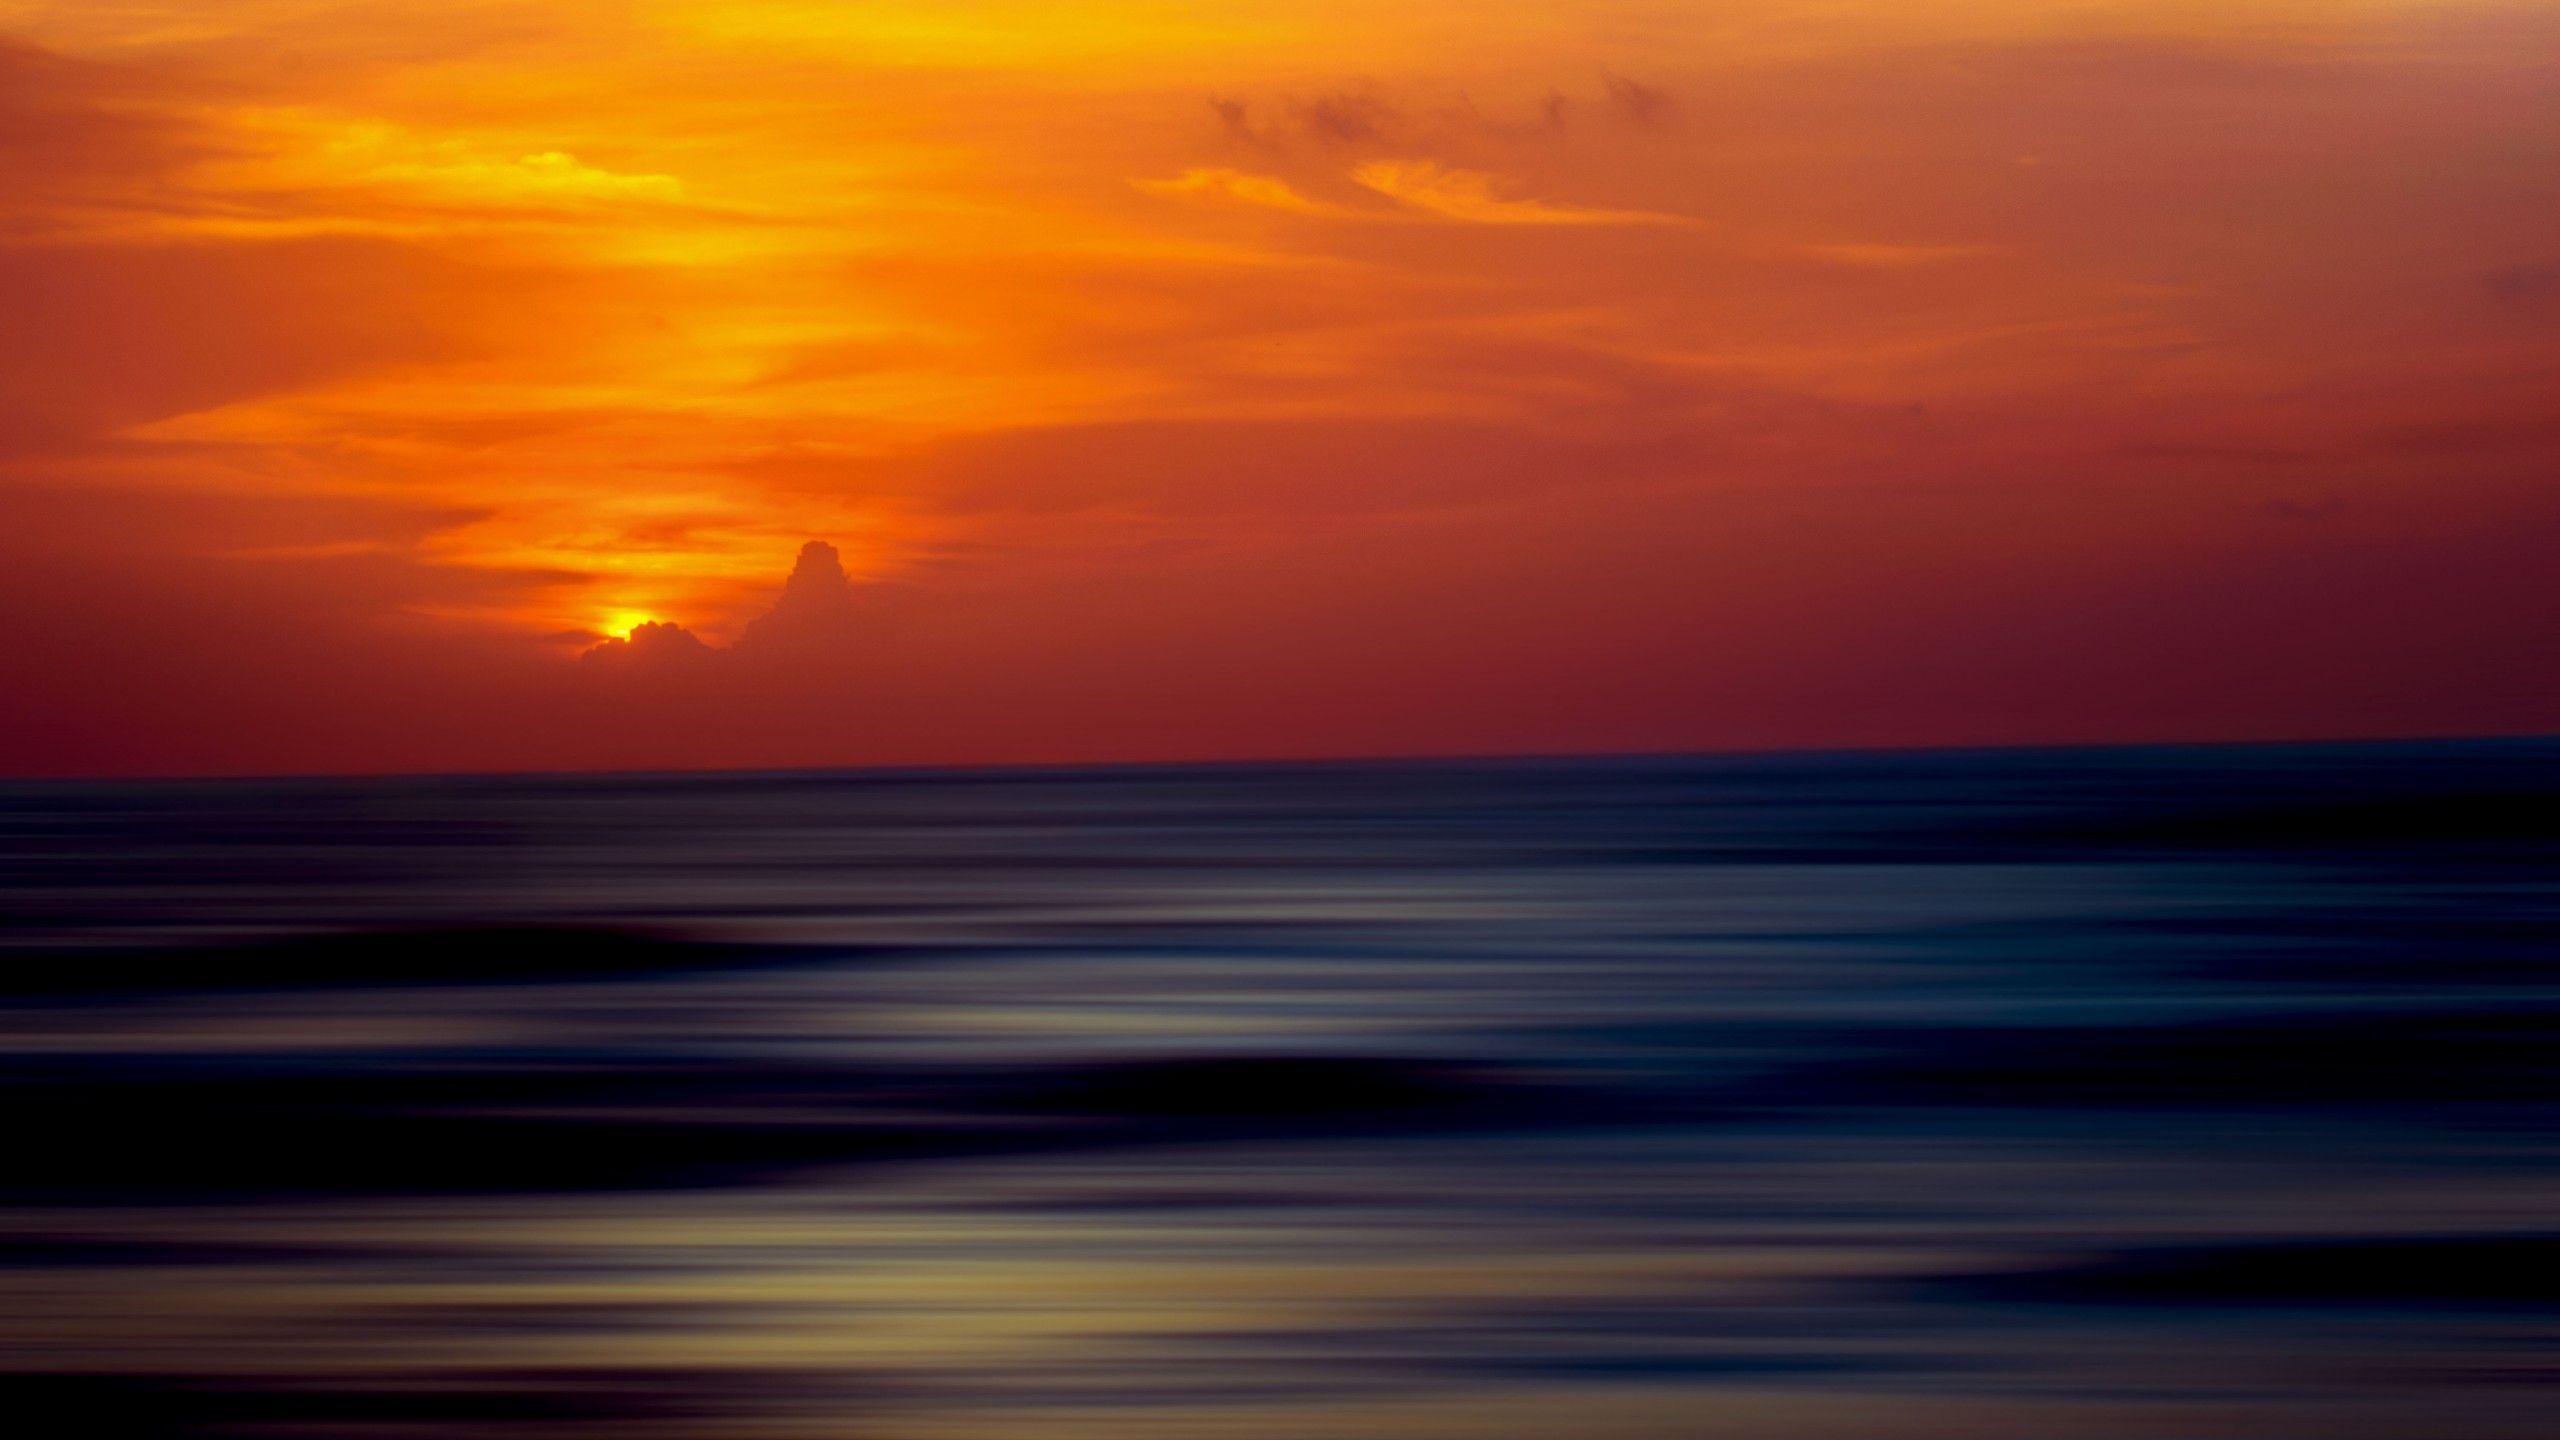 Horizon by Threads - Sunset - Wallpaper : Wallpaper Direct